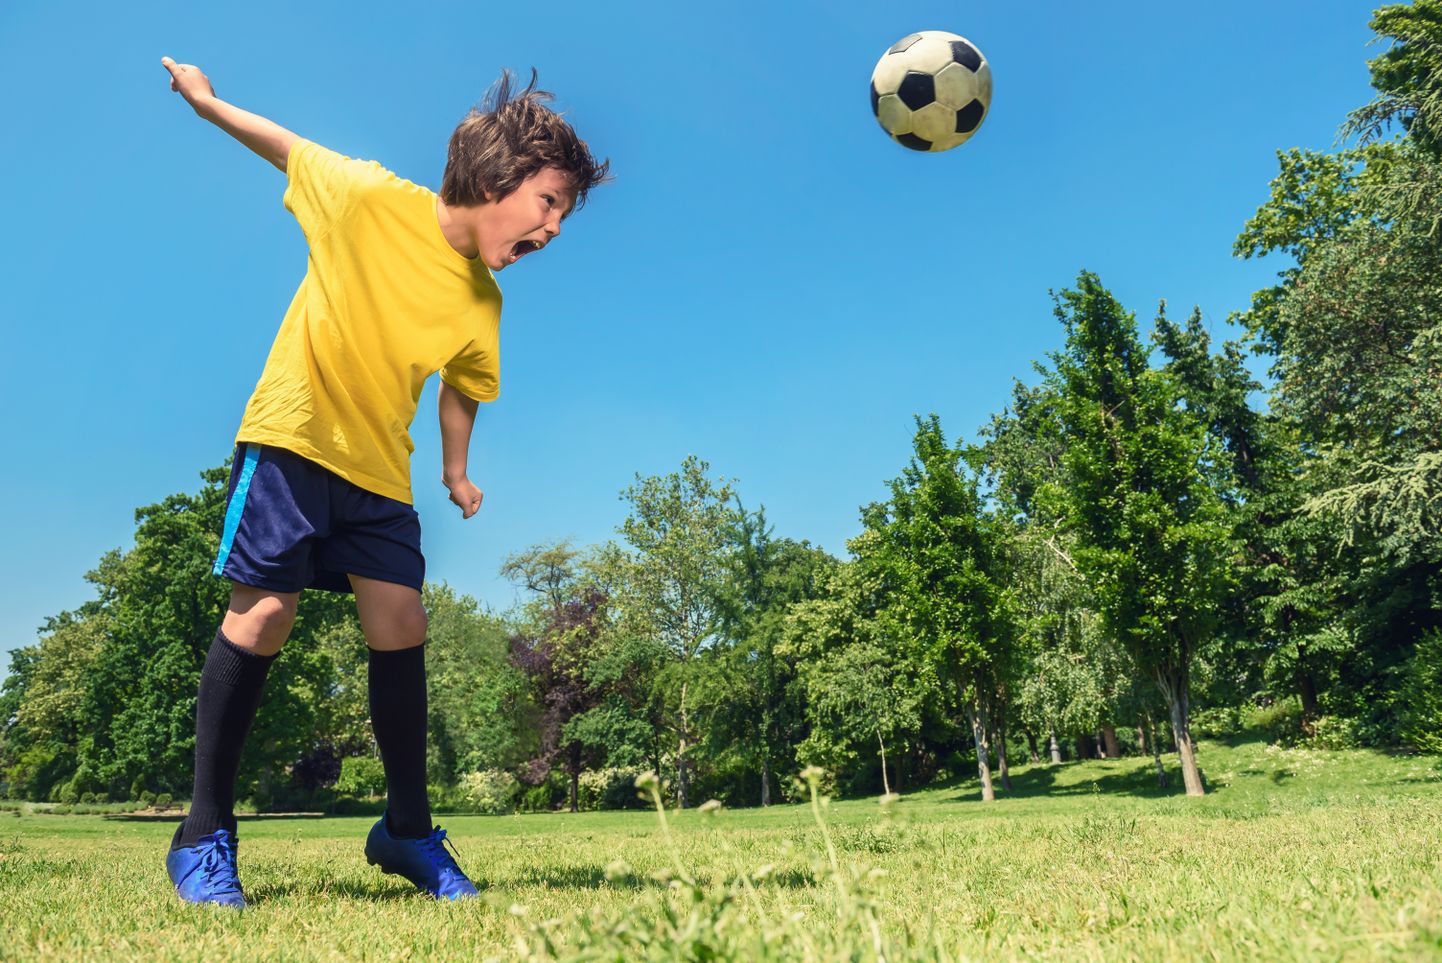 Arstid hoiatavad, et peaga jalgpalli lüüa ei tohi.